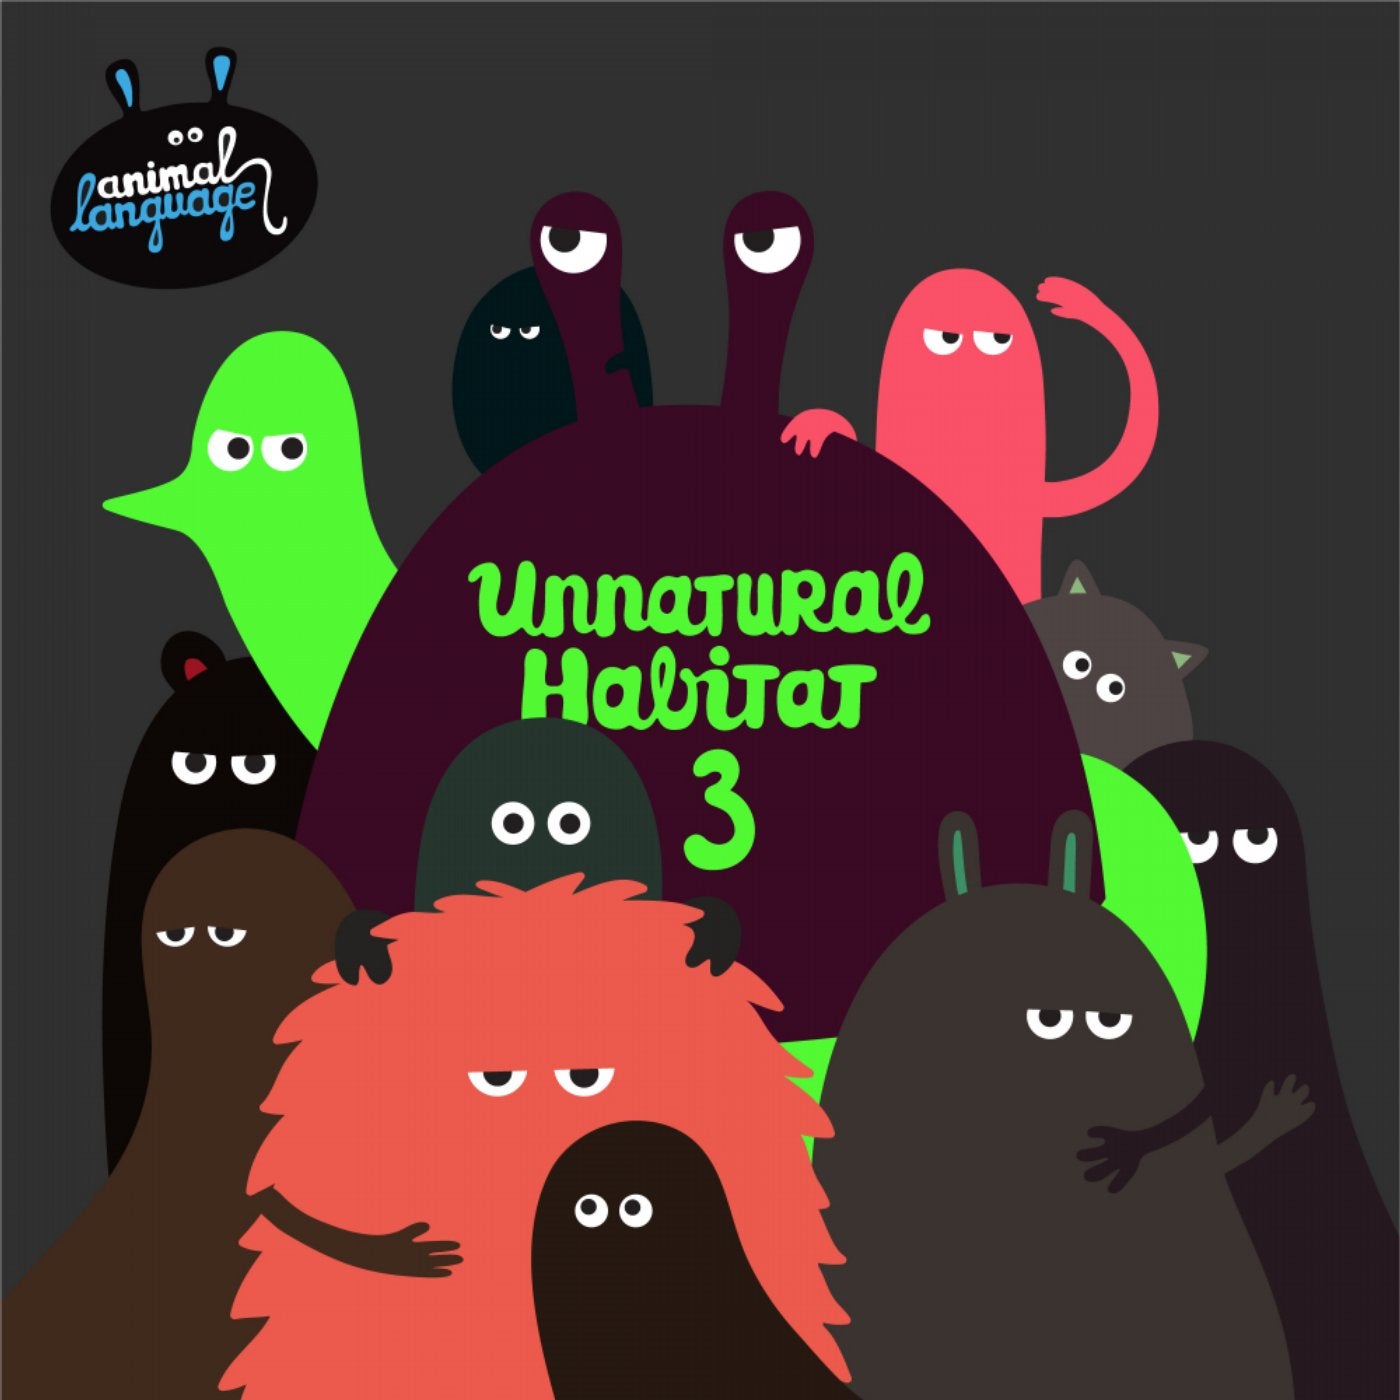 Unnatural Habitat 3